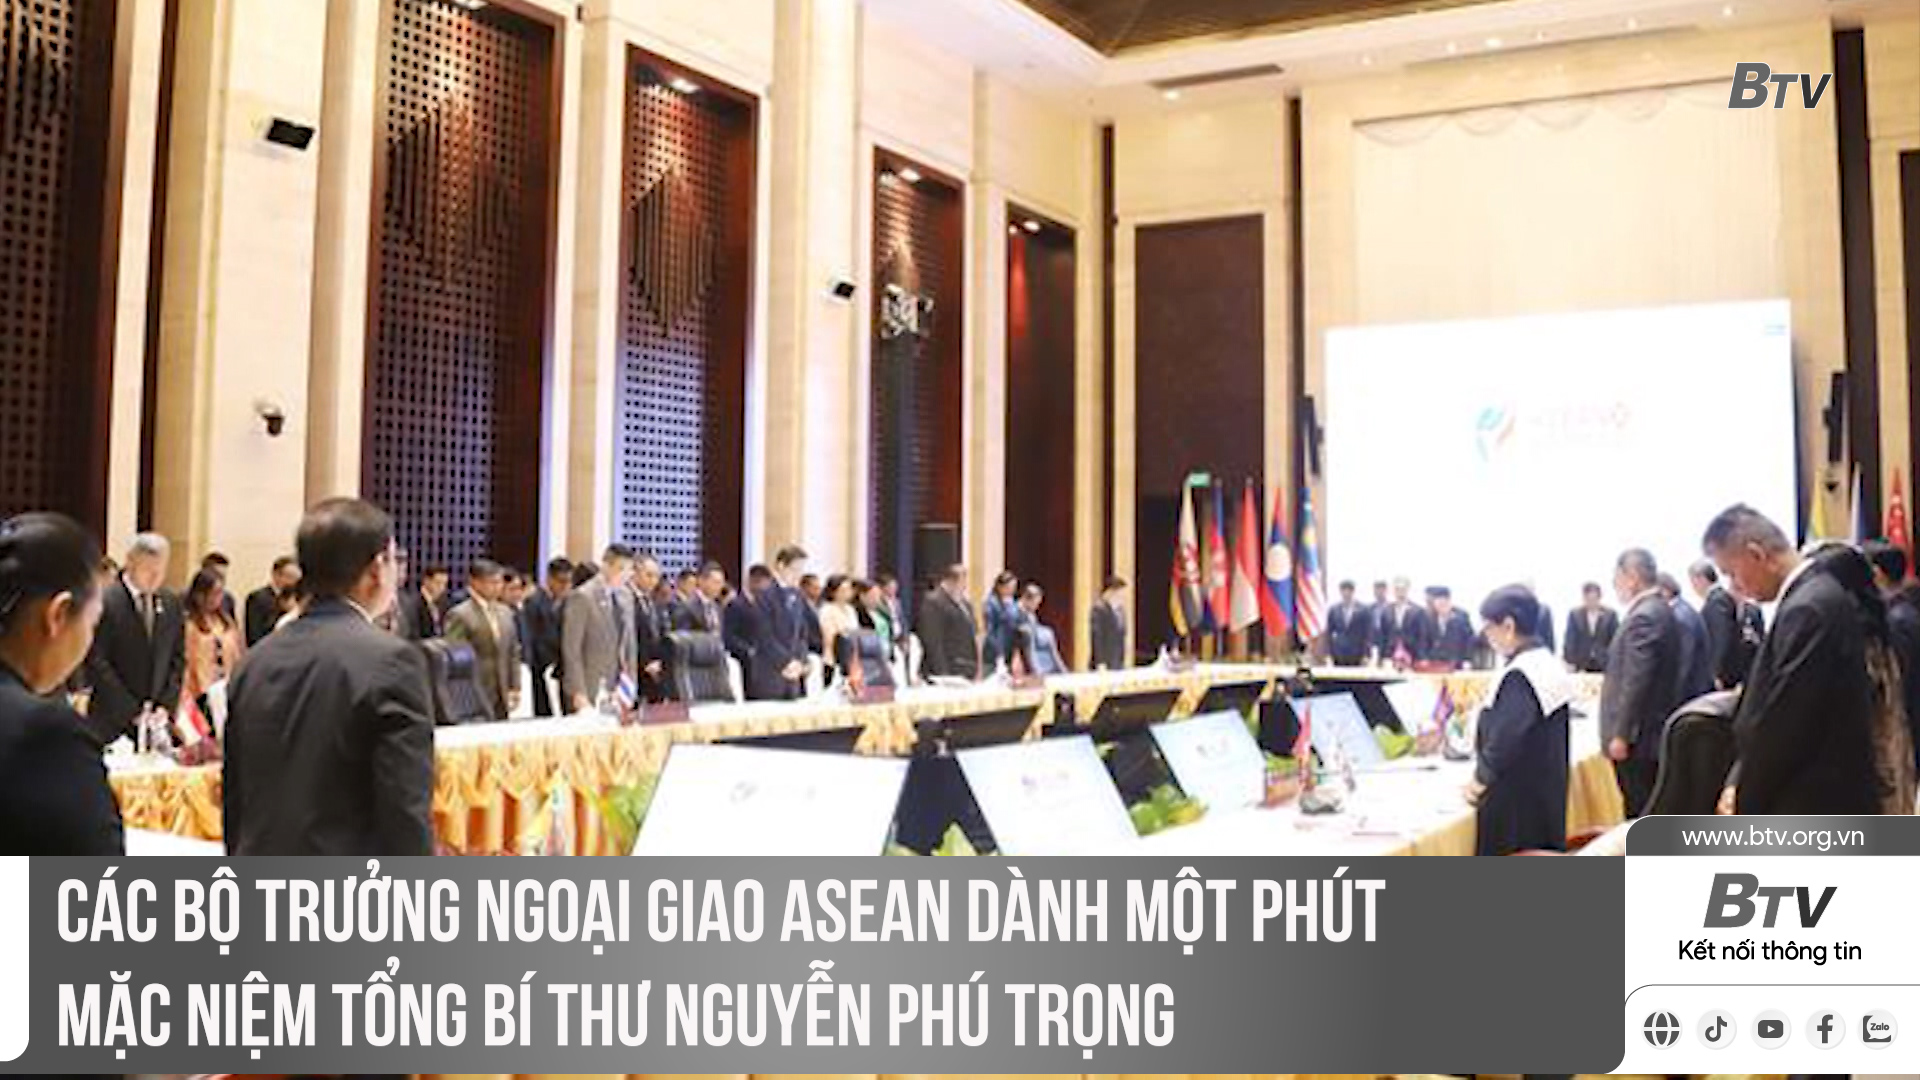 Các Bộ trưởng Ngoại giao ASEAN dành một phút mặc niệm Tổng Bí thư Nguyễn Phú Trọng